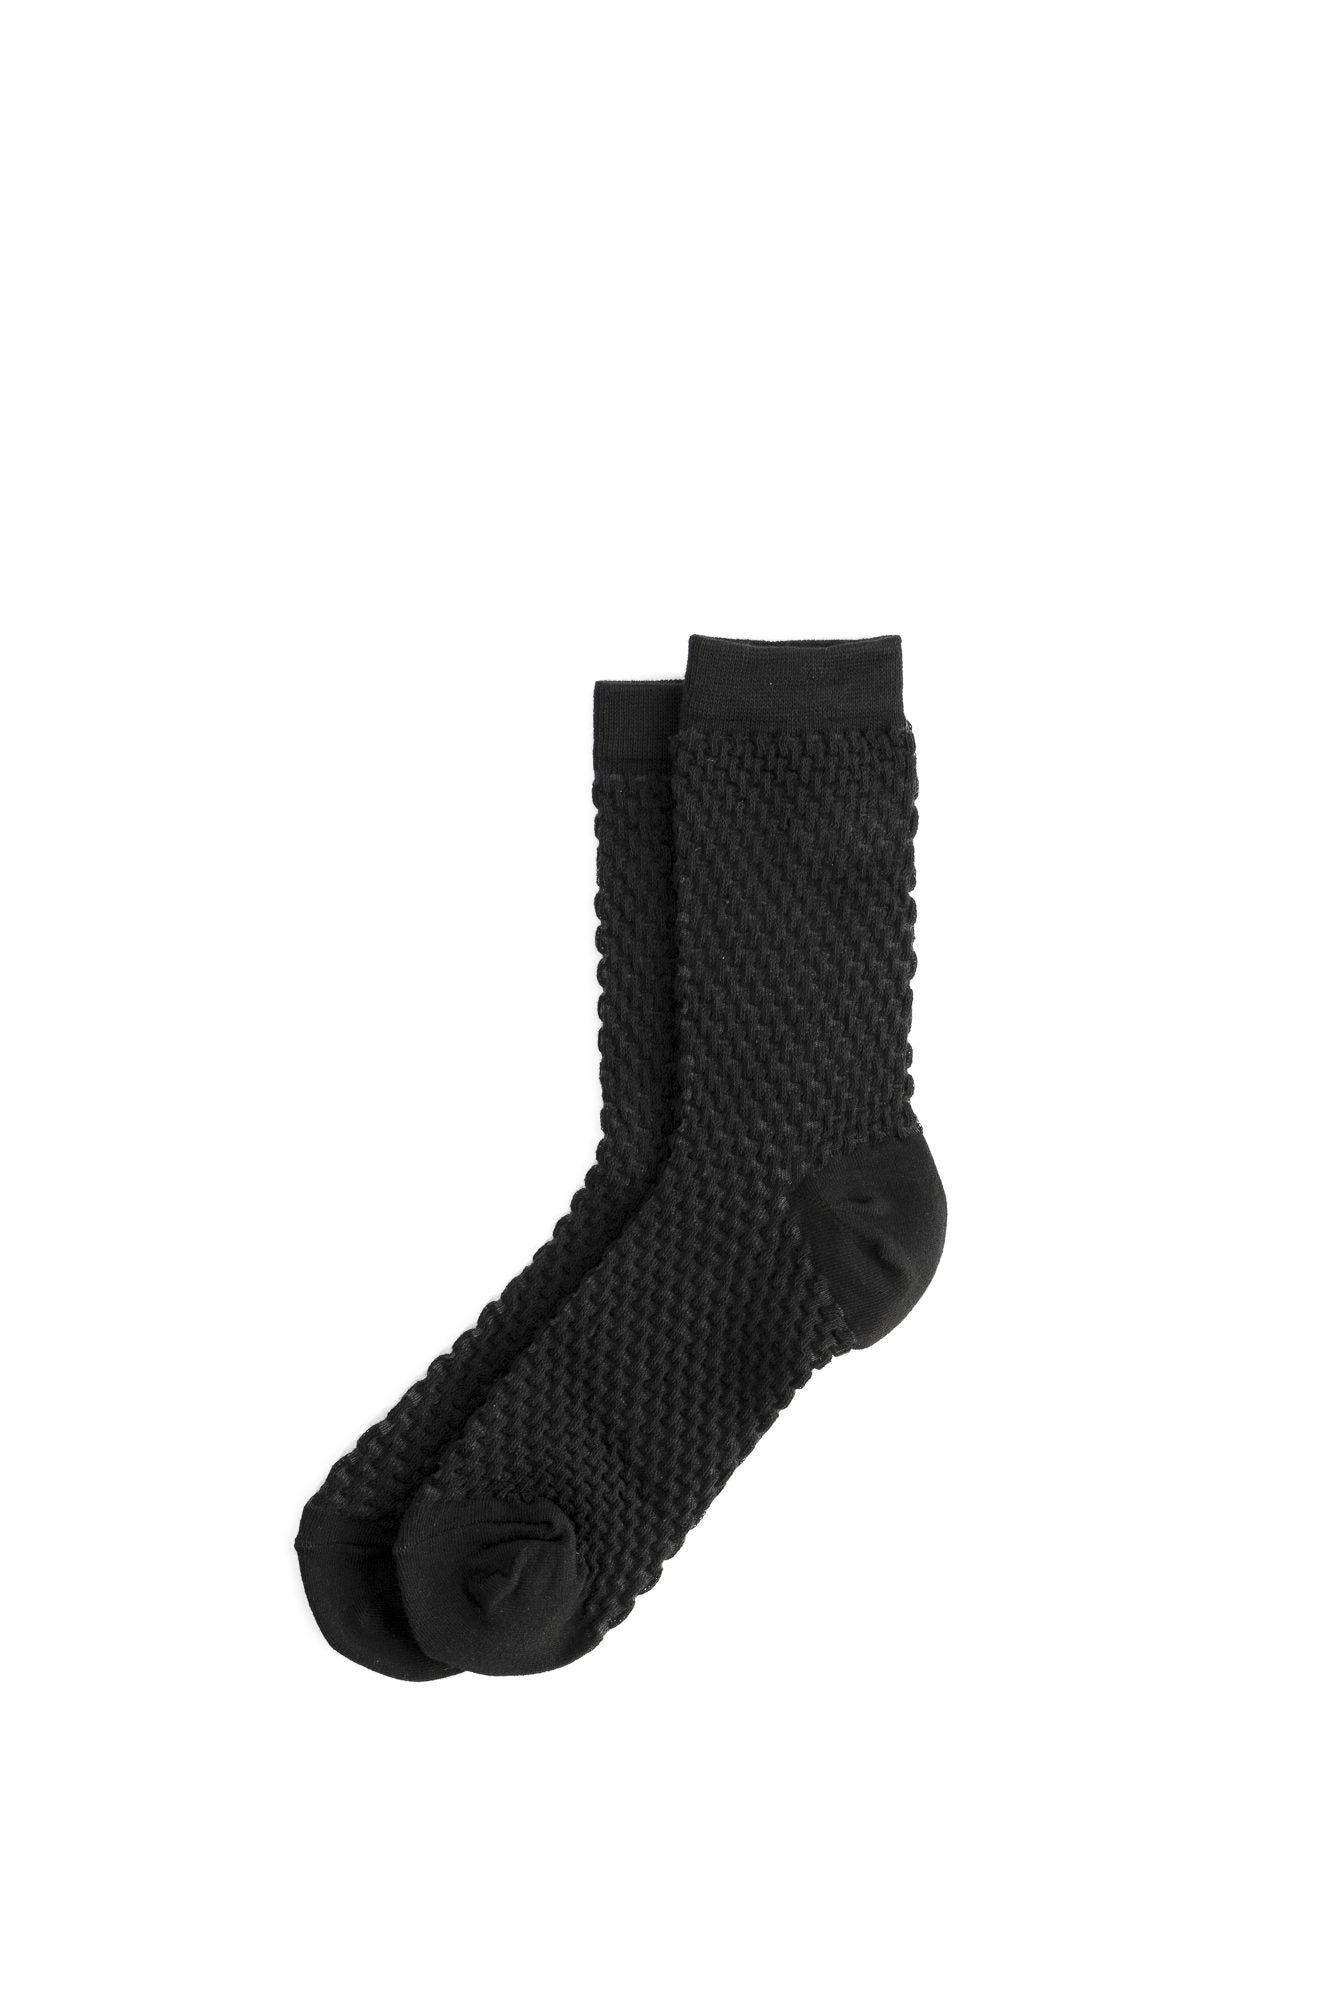 Square Socks | Stilen | Avisons NZ